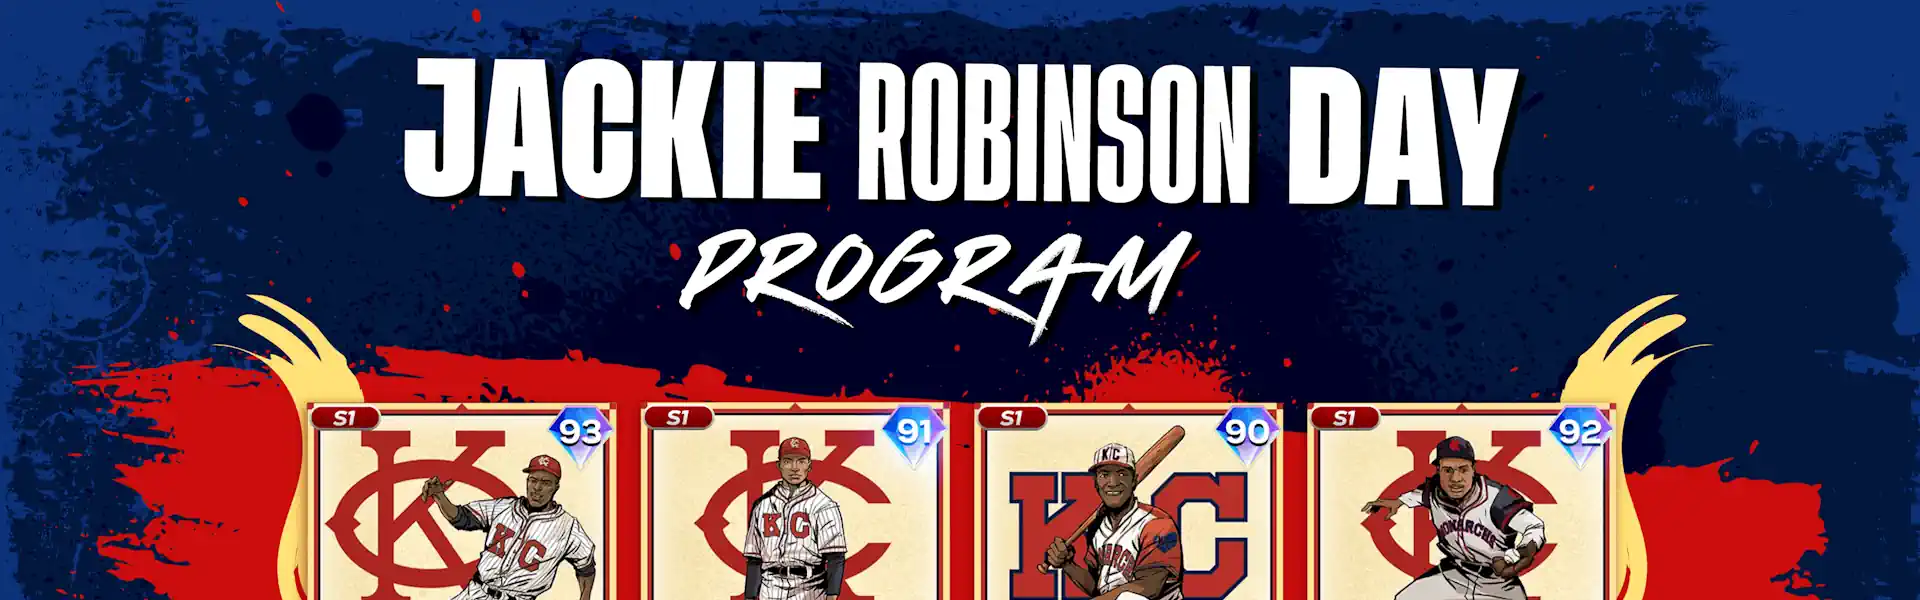 Jackie Robinson Day Program s